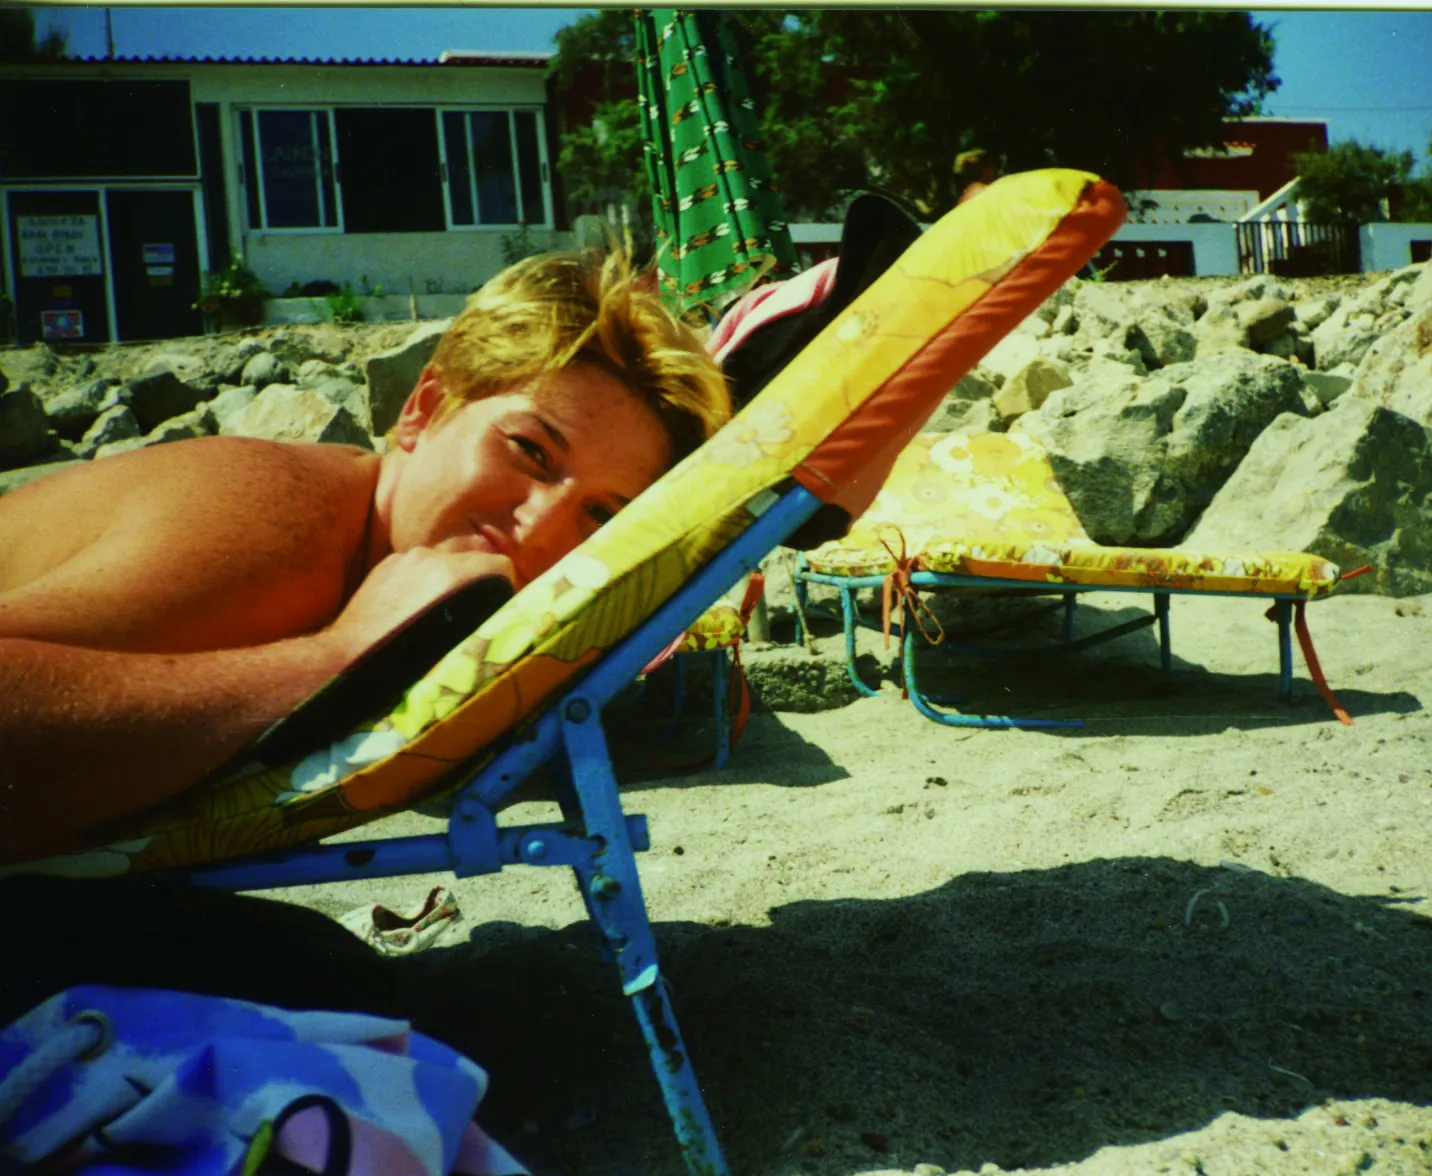 Justine sunbathing in her early twenties.